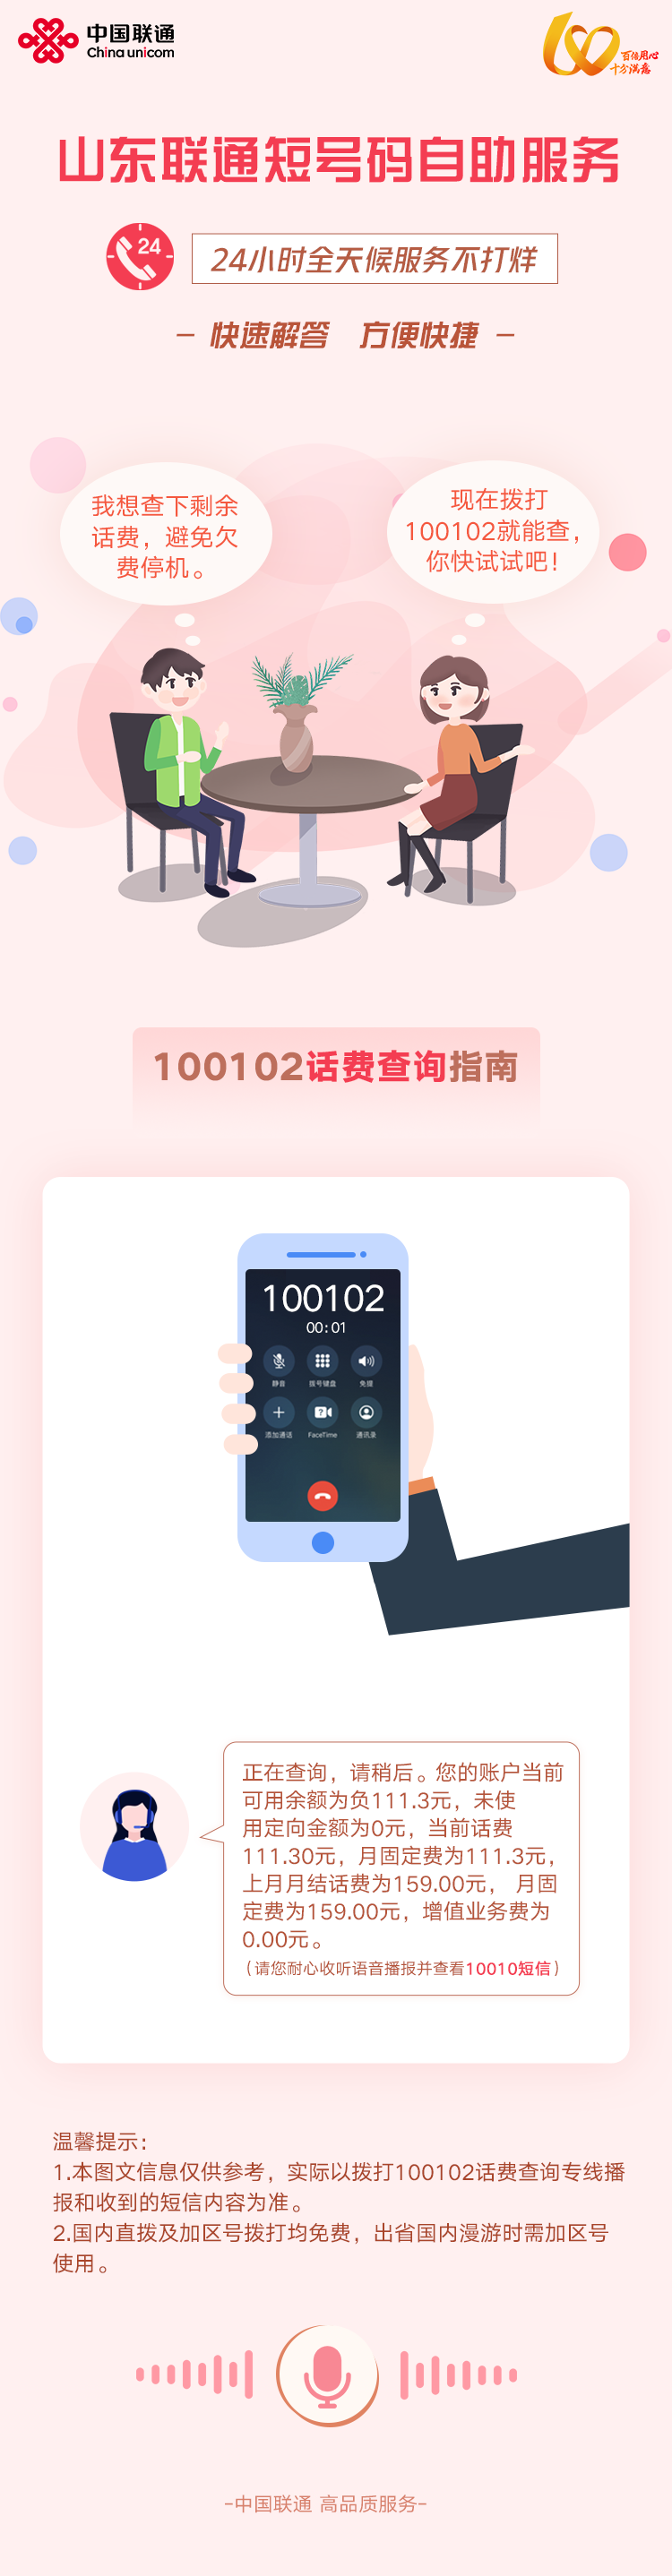 中国联通客服电话 中国联通人工客服